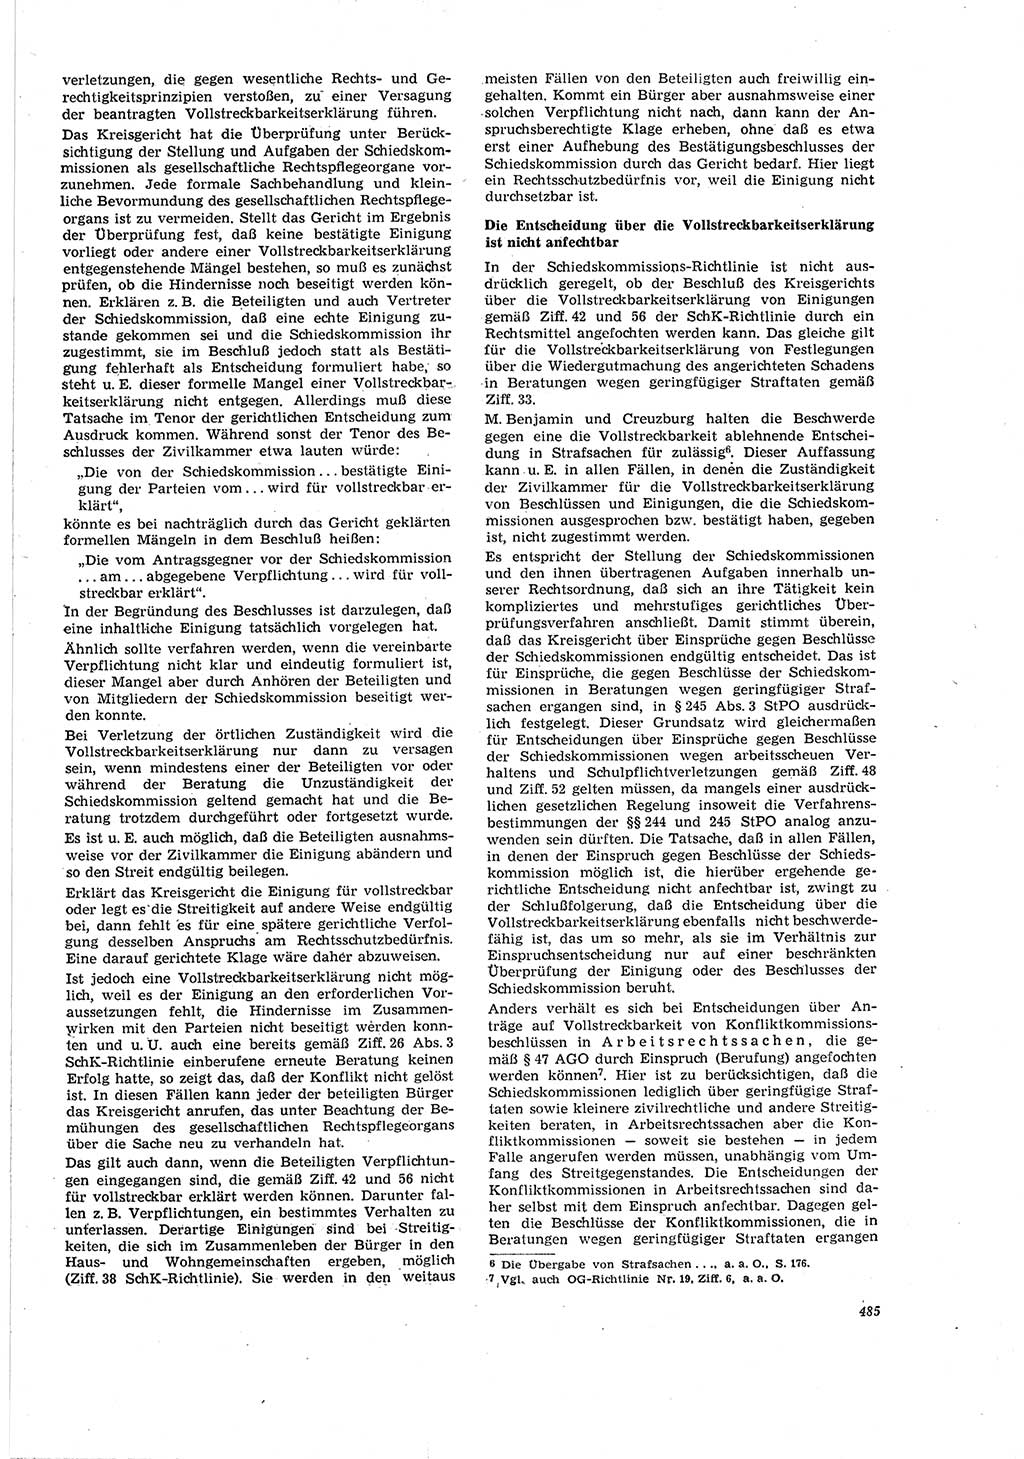 Neue Justiz (NJ), Zeitschrift für Recht und Rechtswissenschaft [Deutsche Demokratische Republik (DDR)], 20. Jahrgang 1966, Seite 485 (NJ DDR 1966, S. 485)